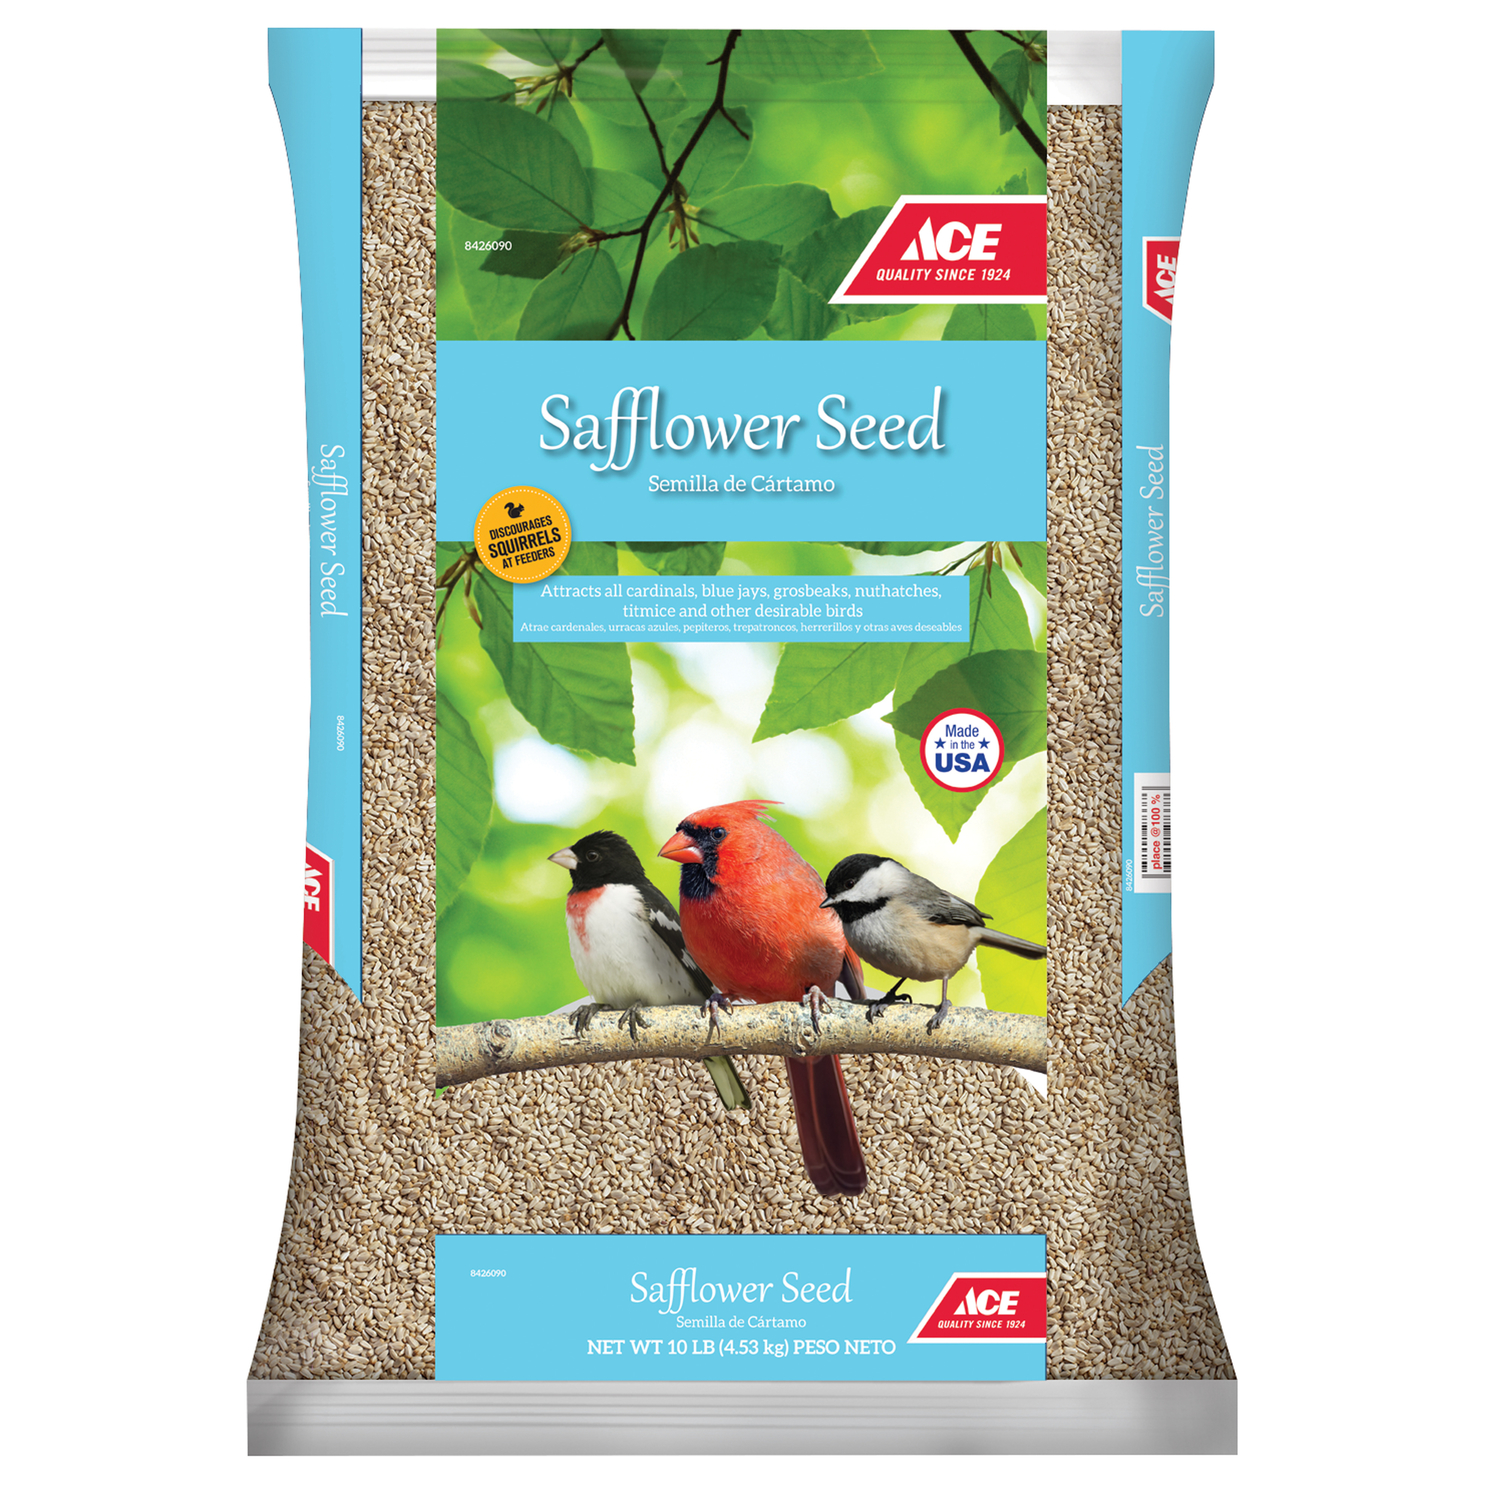 buy bird seed online